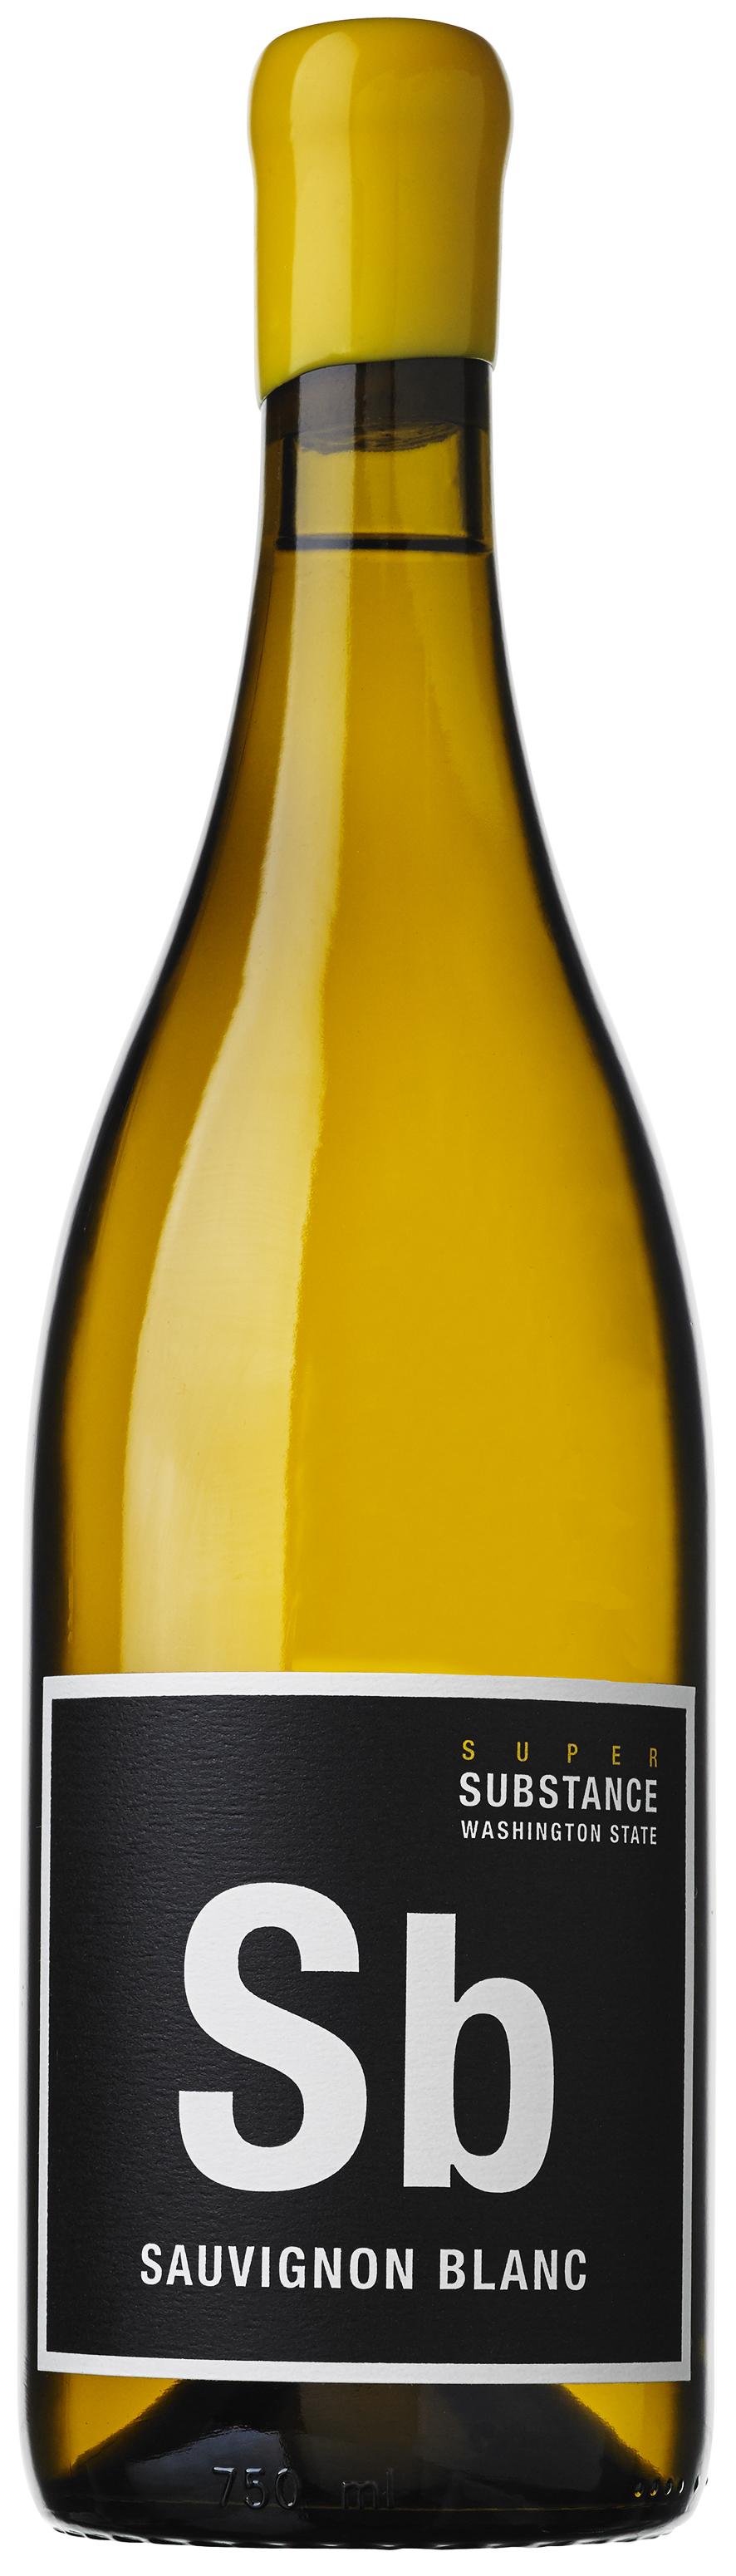 K VINTNERS CHARLES SMITH - USA, Washington Super Substance Sauvignon Blanc Druvorna till vinet kommer från en vingård som heter Sunset i den nya, lilla AVA:an Ancient Lake som i sin tur tillhör den